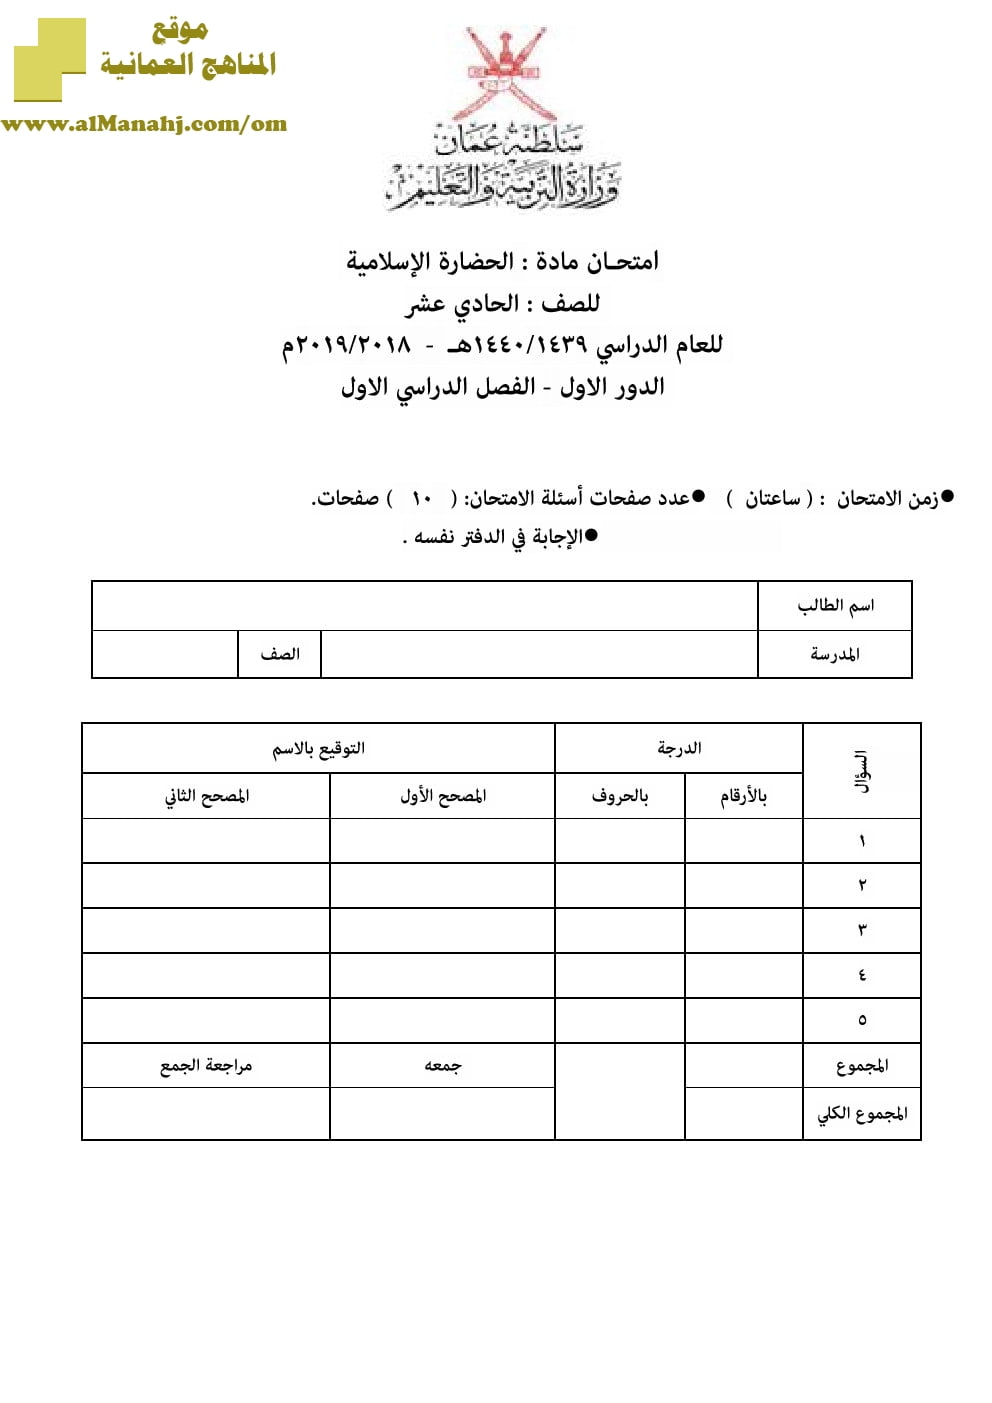 أسئلة وإجابة الامتحان الرسمي الدور الأول والثاني (حضارة اسلامية) الحادي عشر